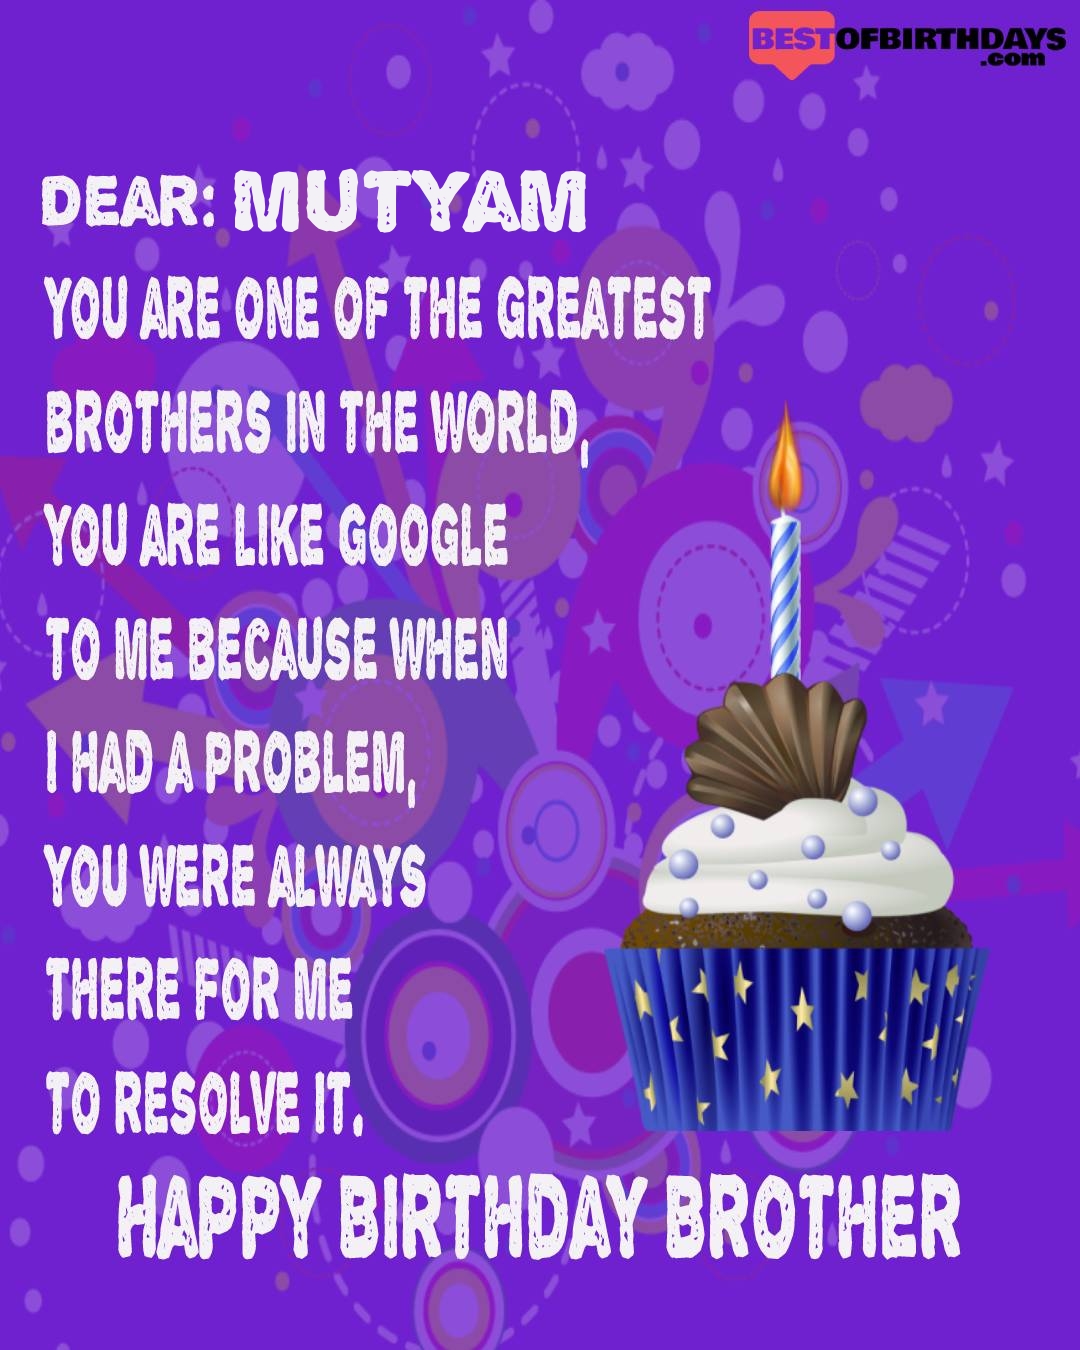 Happy birthday mutyam bhai brother bro